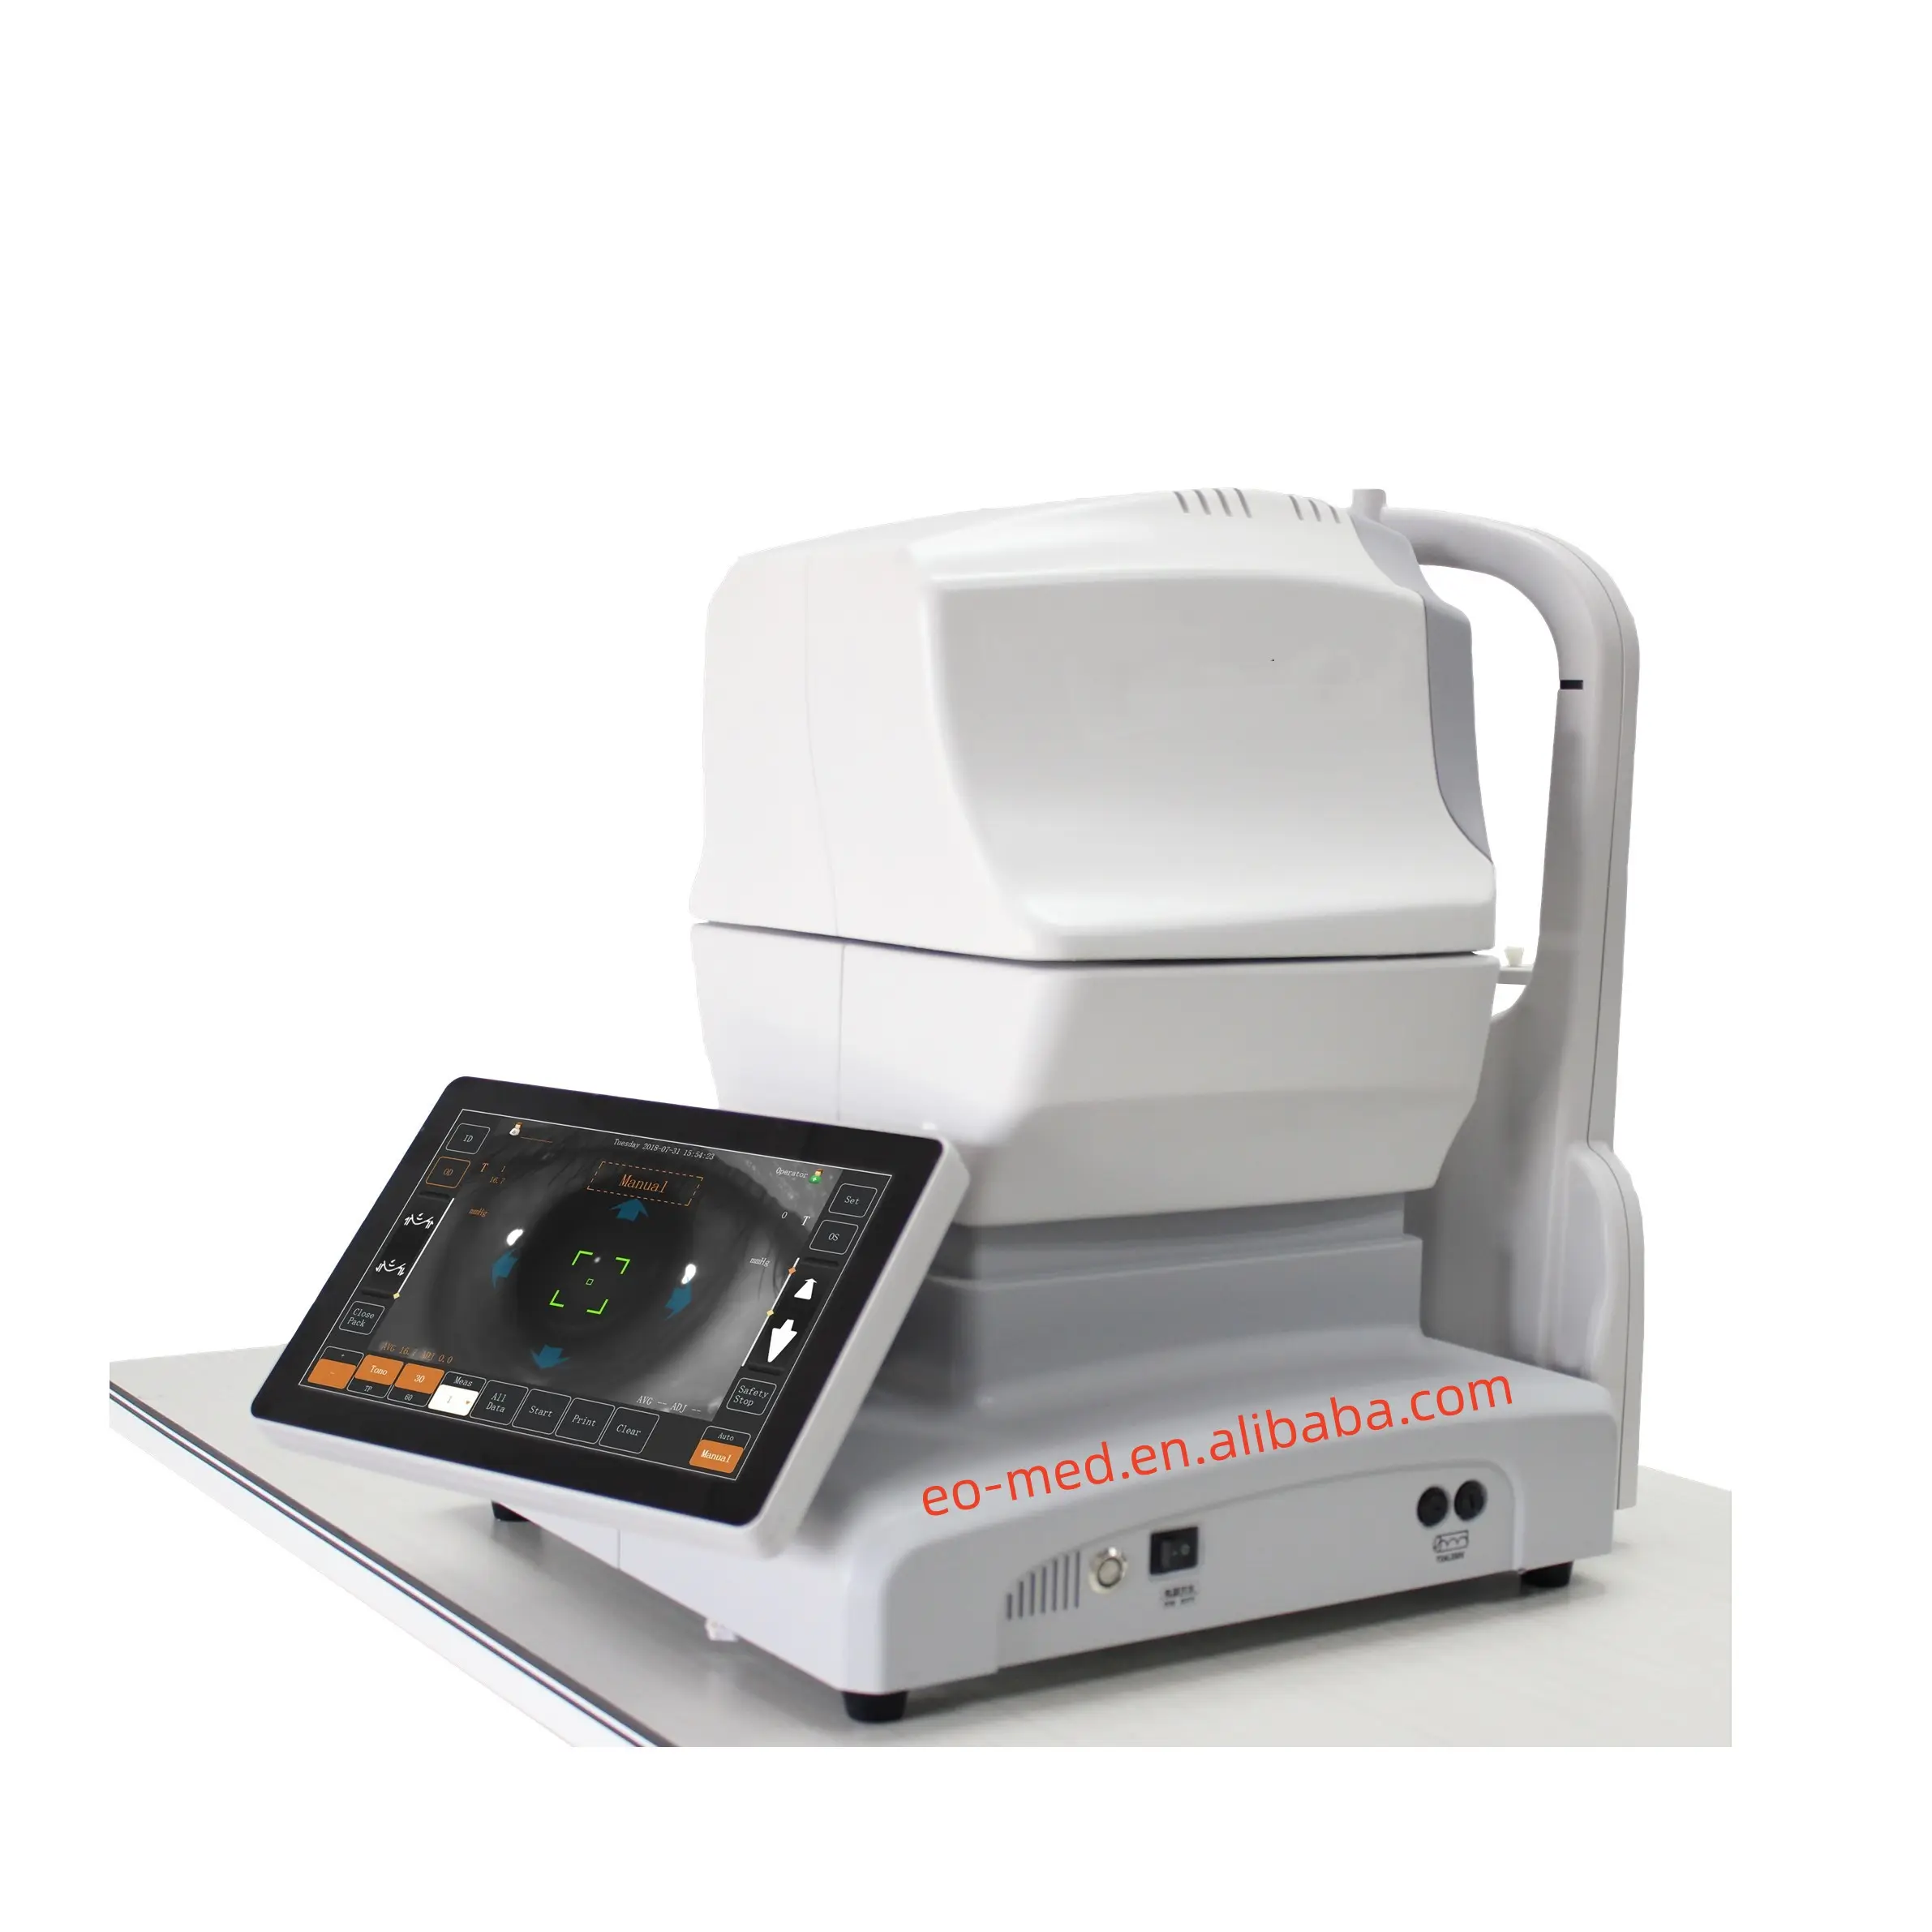 信頼性の高い判断と測定結果を備えた目の検査用自動3D非接触眼圧計TM1000